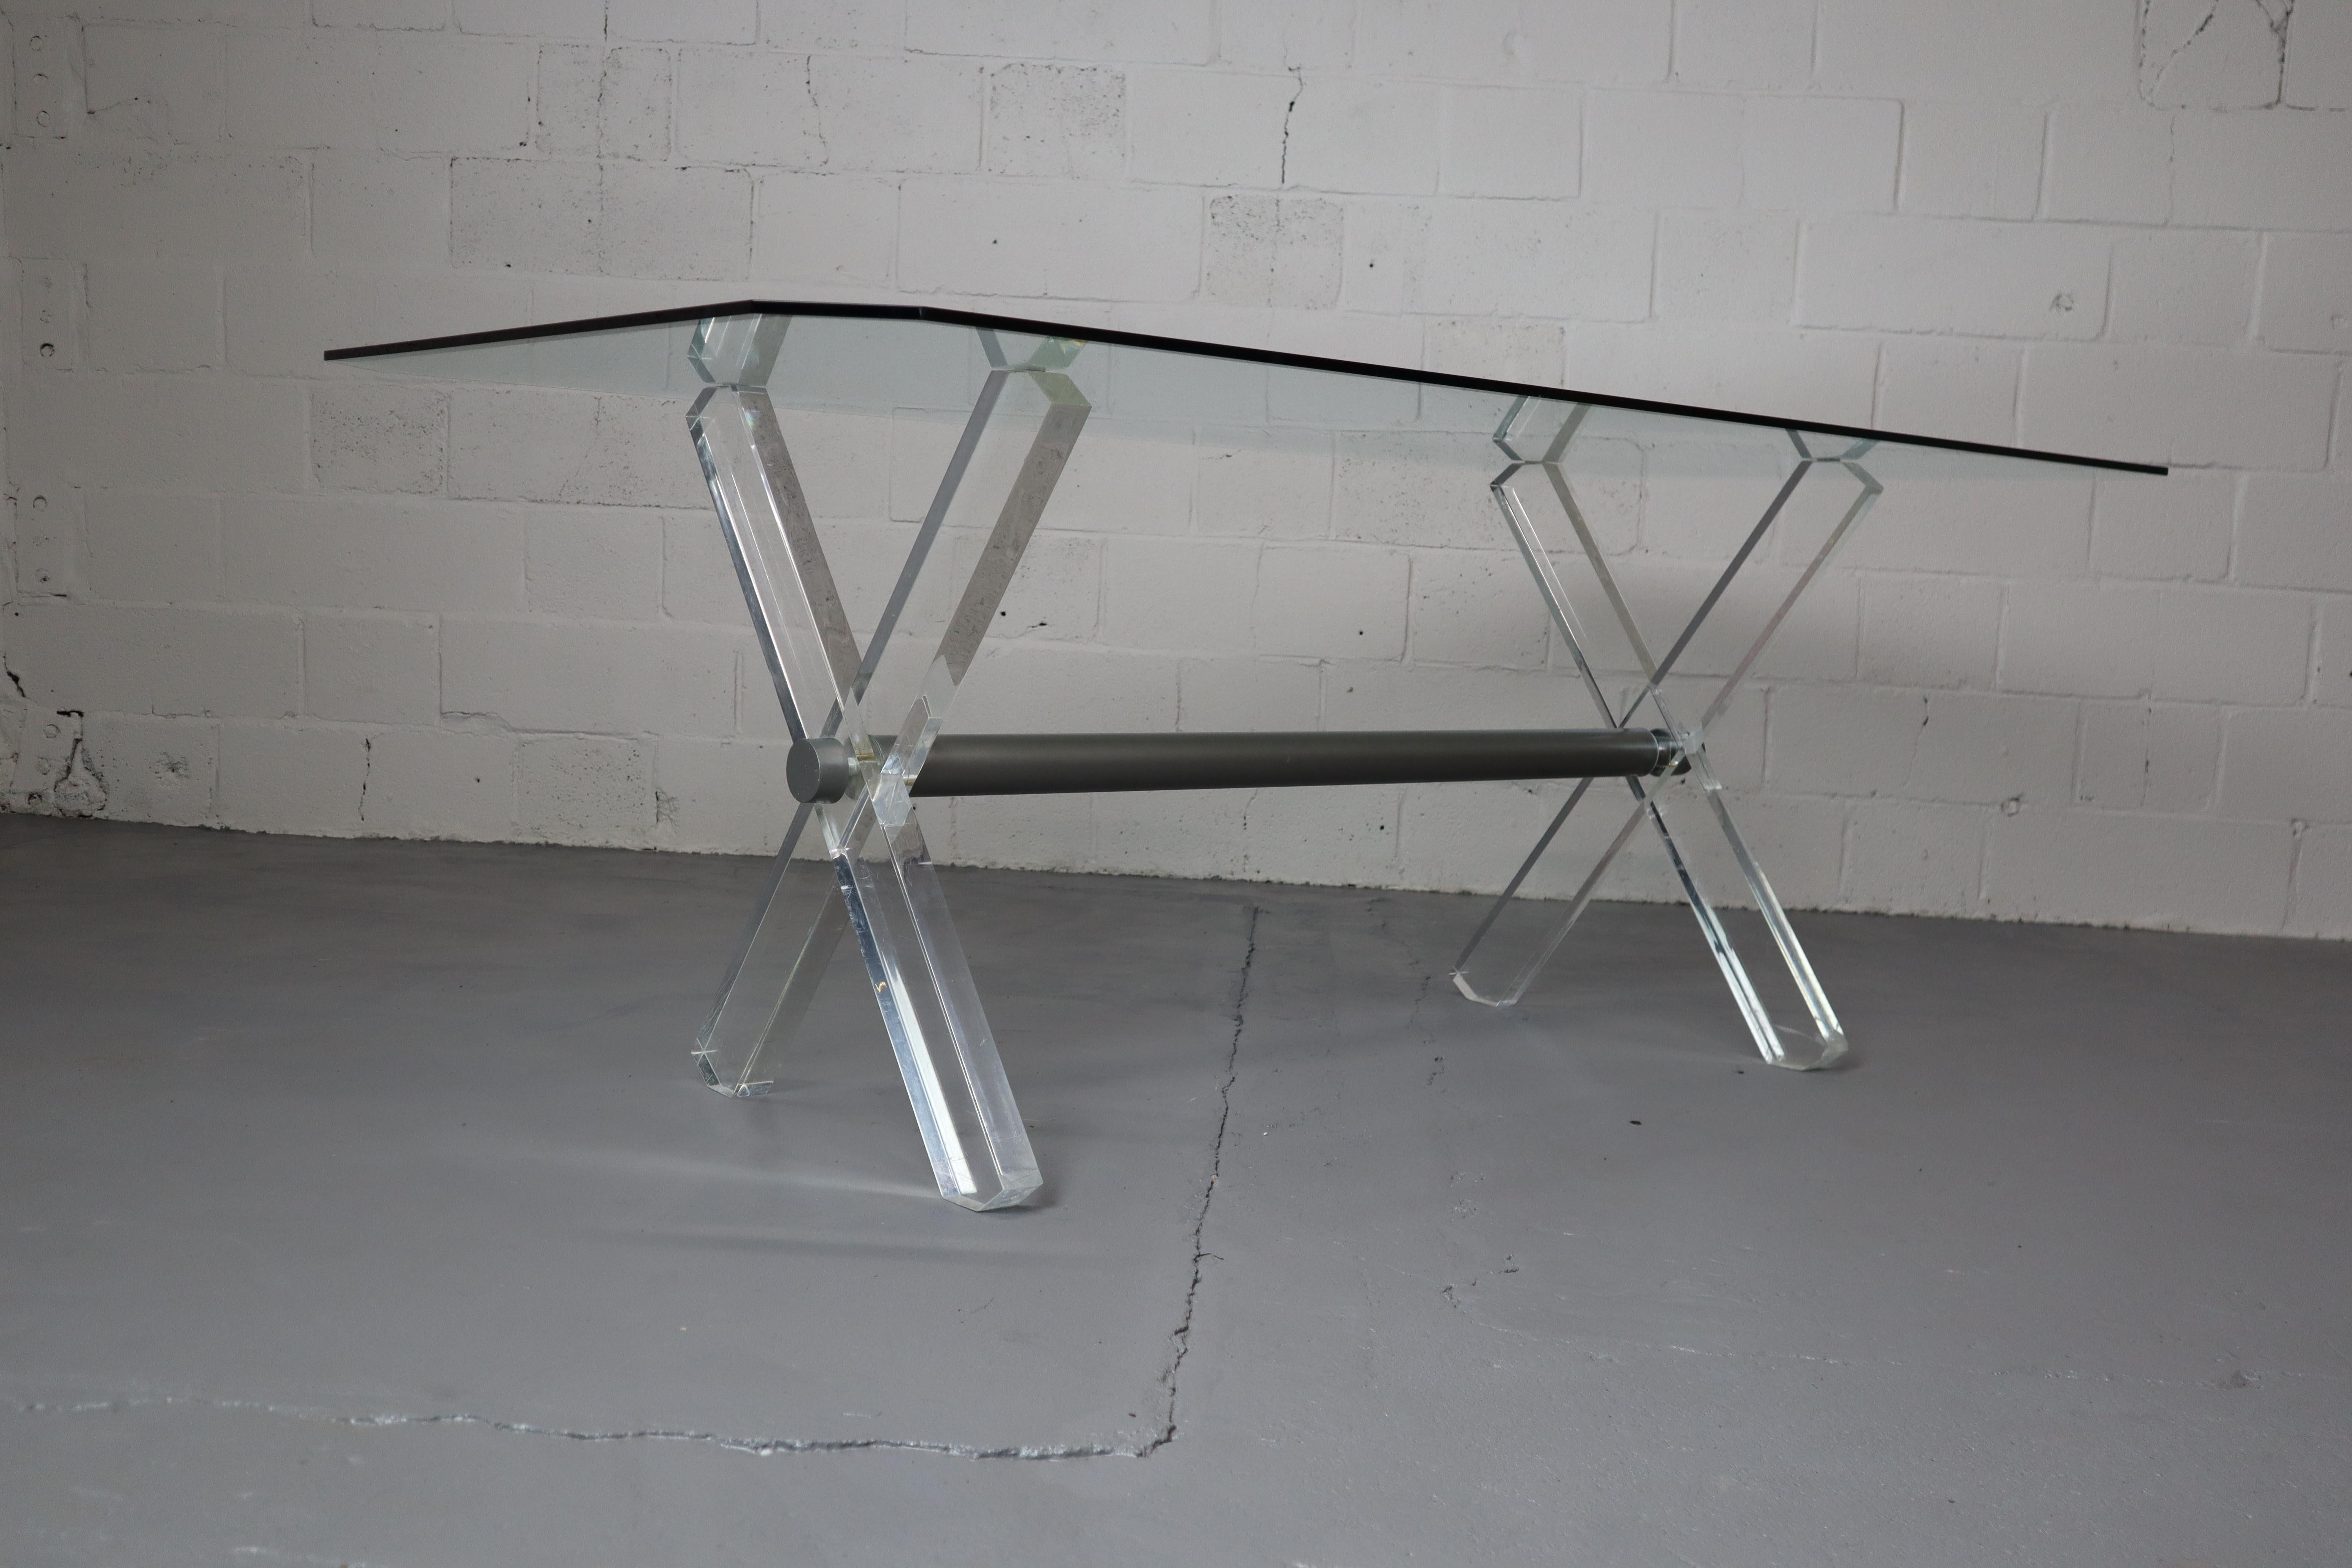 Table de salle à manger vintage avec base en plexiglas et plateau en verre. Plateau en verre rectangulaire biseauté.
190x100x74 cm. 
Quelques signes d'usure sur le dessus et la base.